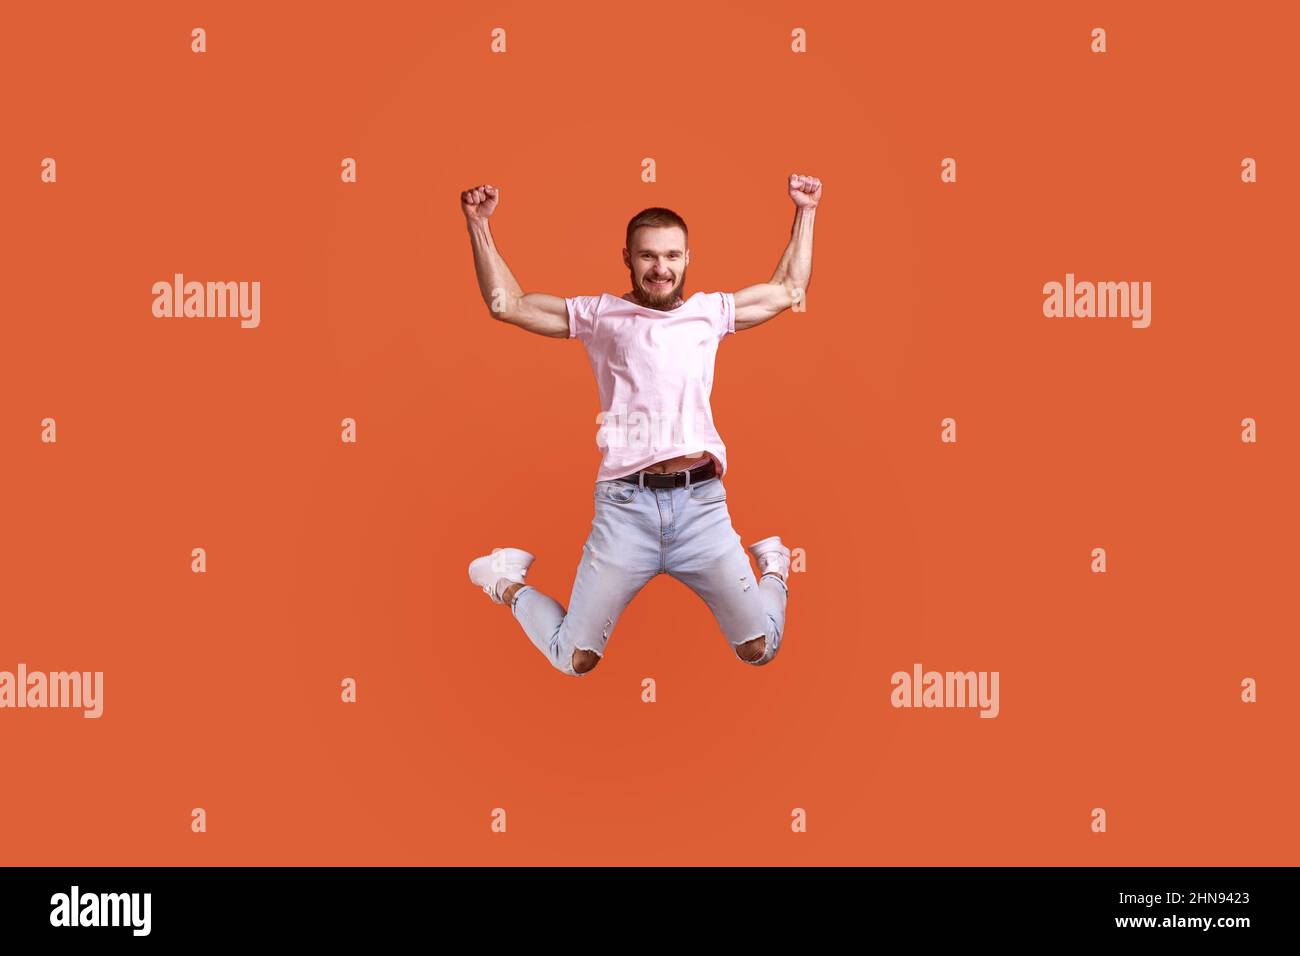 Ritratto di felice attraente uomo bearded che salta in aria le braccia sollevate, guardando la macchina fotografica, spazio di copia per l'annuncio, indossando la T-shirt rosa e jeans. Studio interno girato isolato su sfondo arancione. Foto Stock